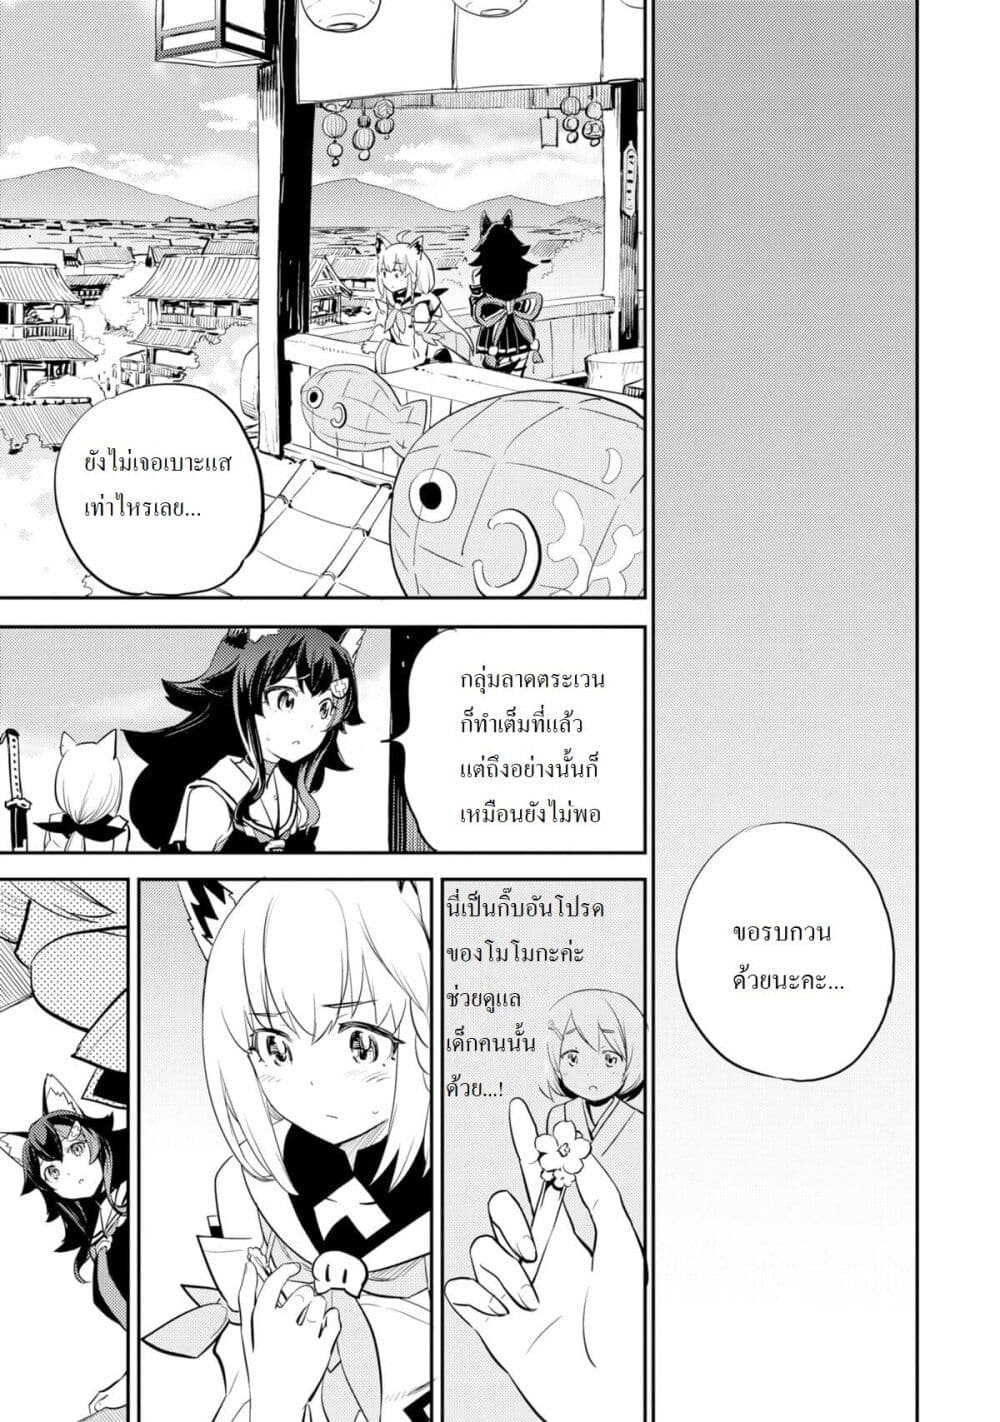 Holoearth Chronicles SideE ~Yamato Phantasia~ ตอนที่ 4 (5)